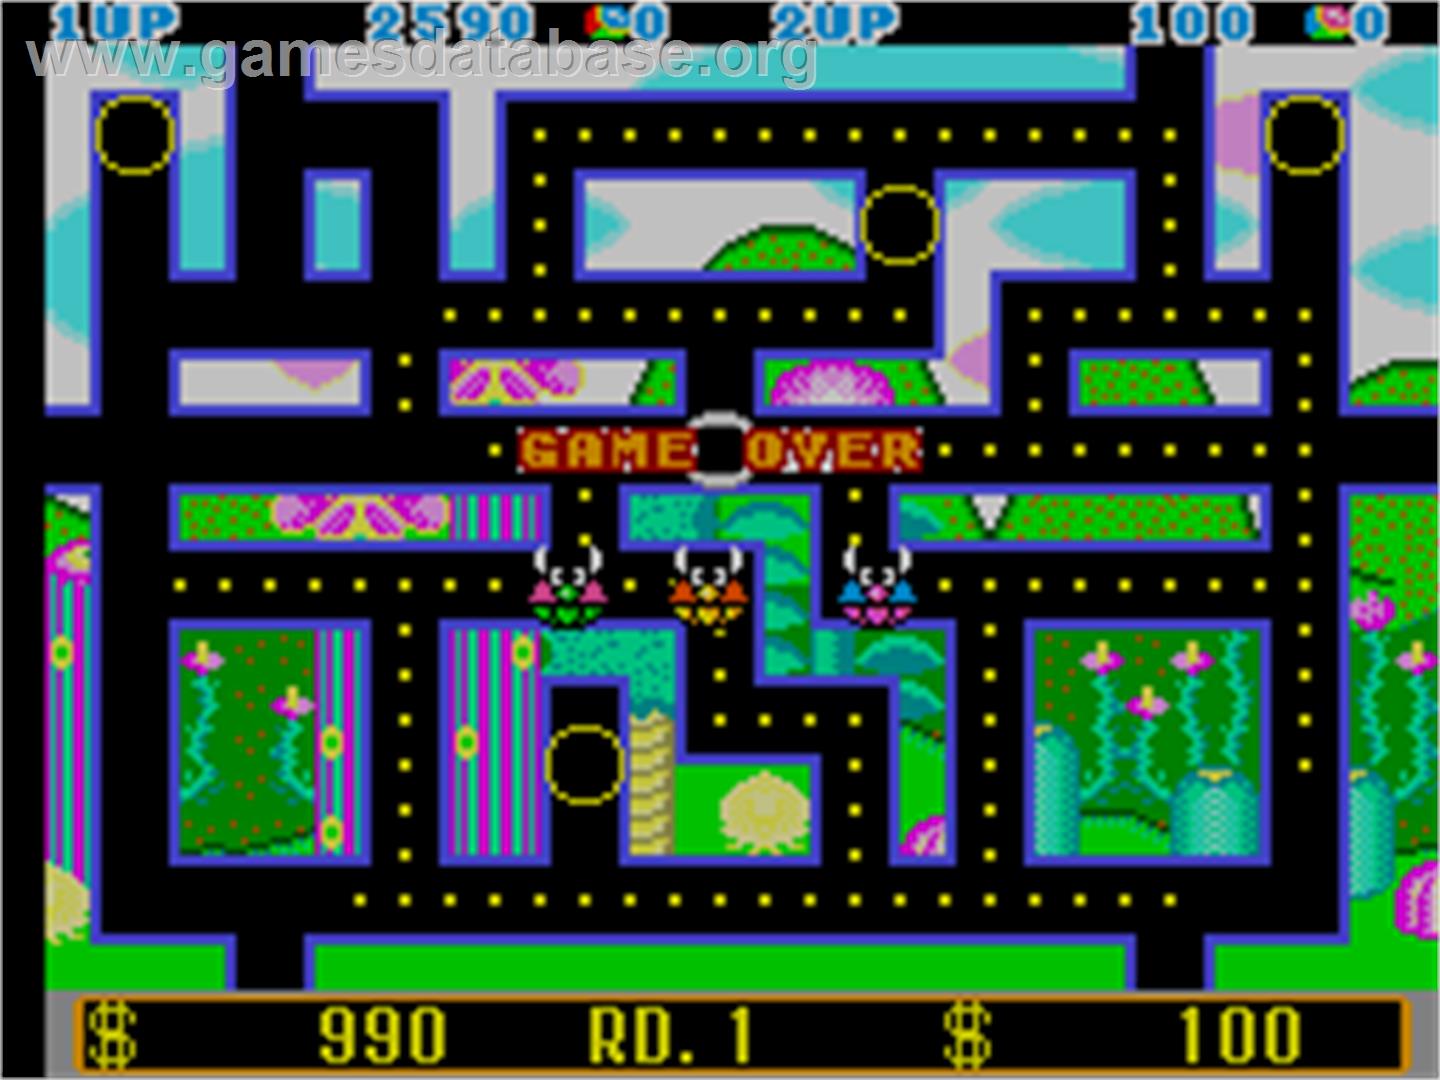 Opa Opa - Arcade - Artwork - Game Over Screen